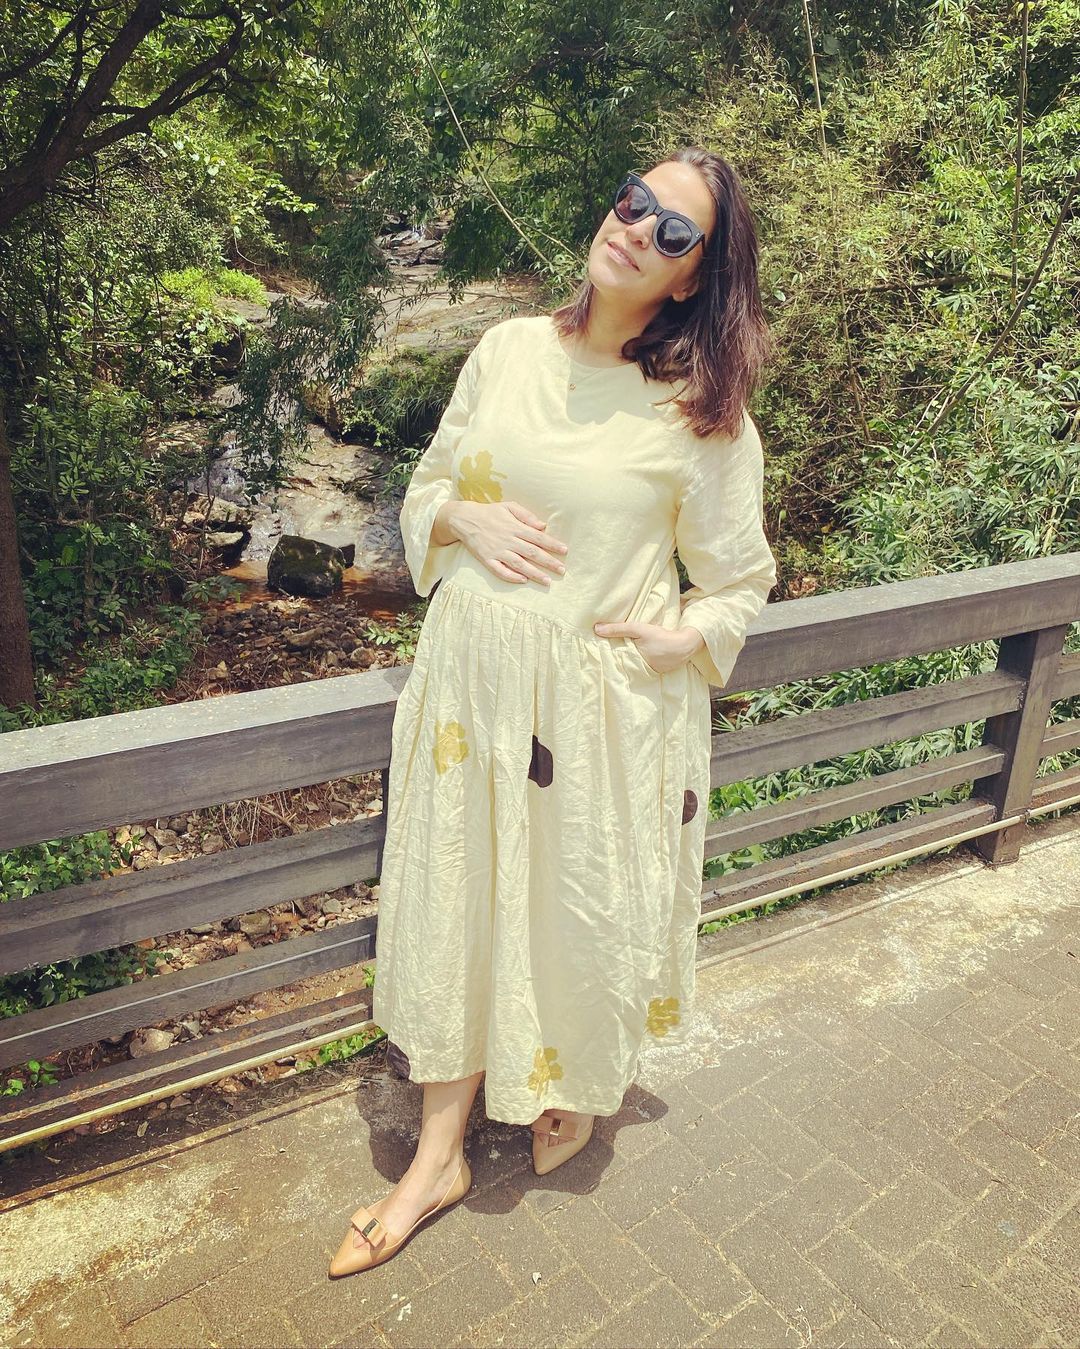  कॉटन मिडी ड्रेस में नेहा धूपिया कंफर्टेबल और स्टाइलिश लग रही हैं. (Image: Instagram/@nehadhupia)